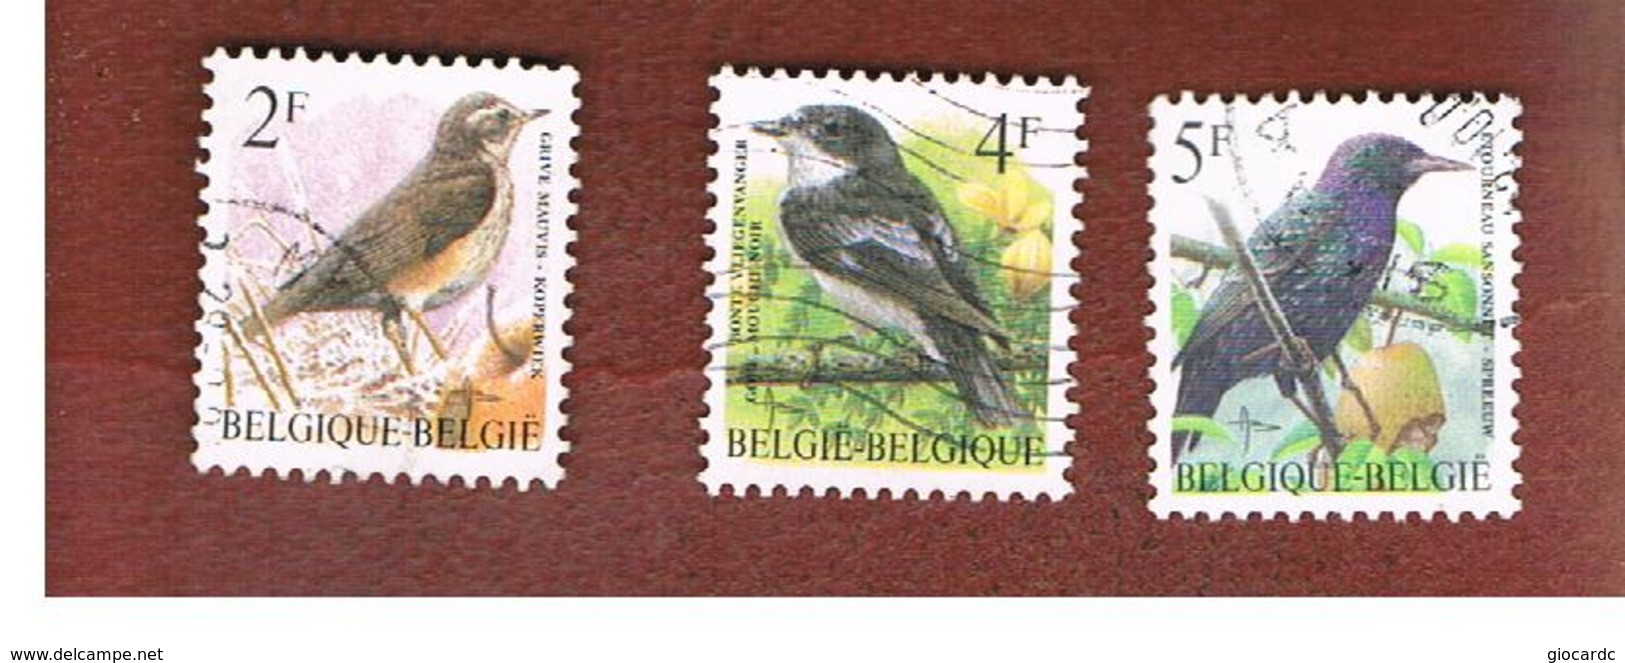 BELGIO (BELGIUM)   - SG 3304.3307  - 1996 BIRDS    - USED - Gebraucht